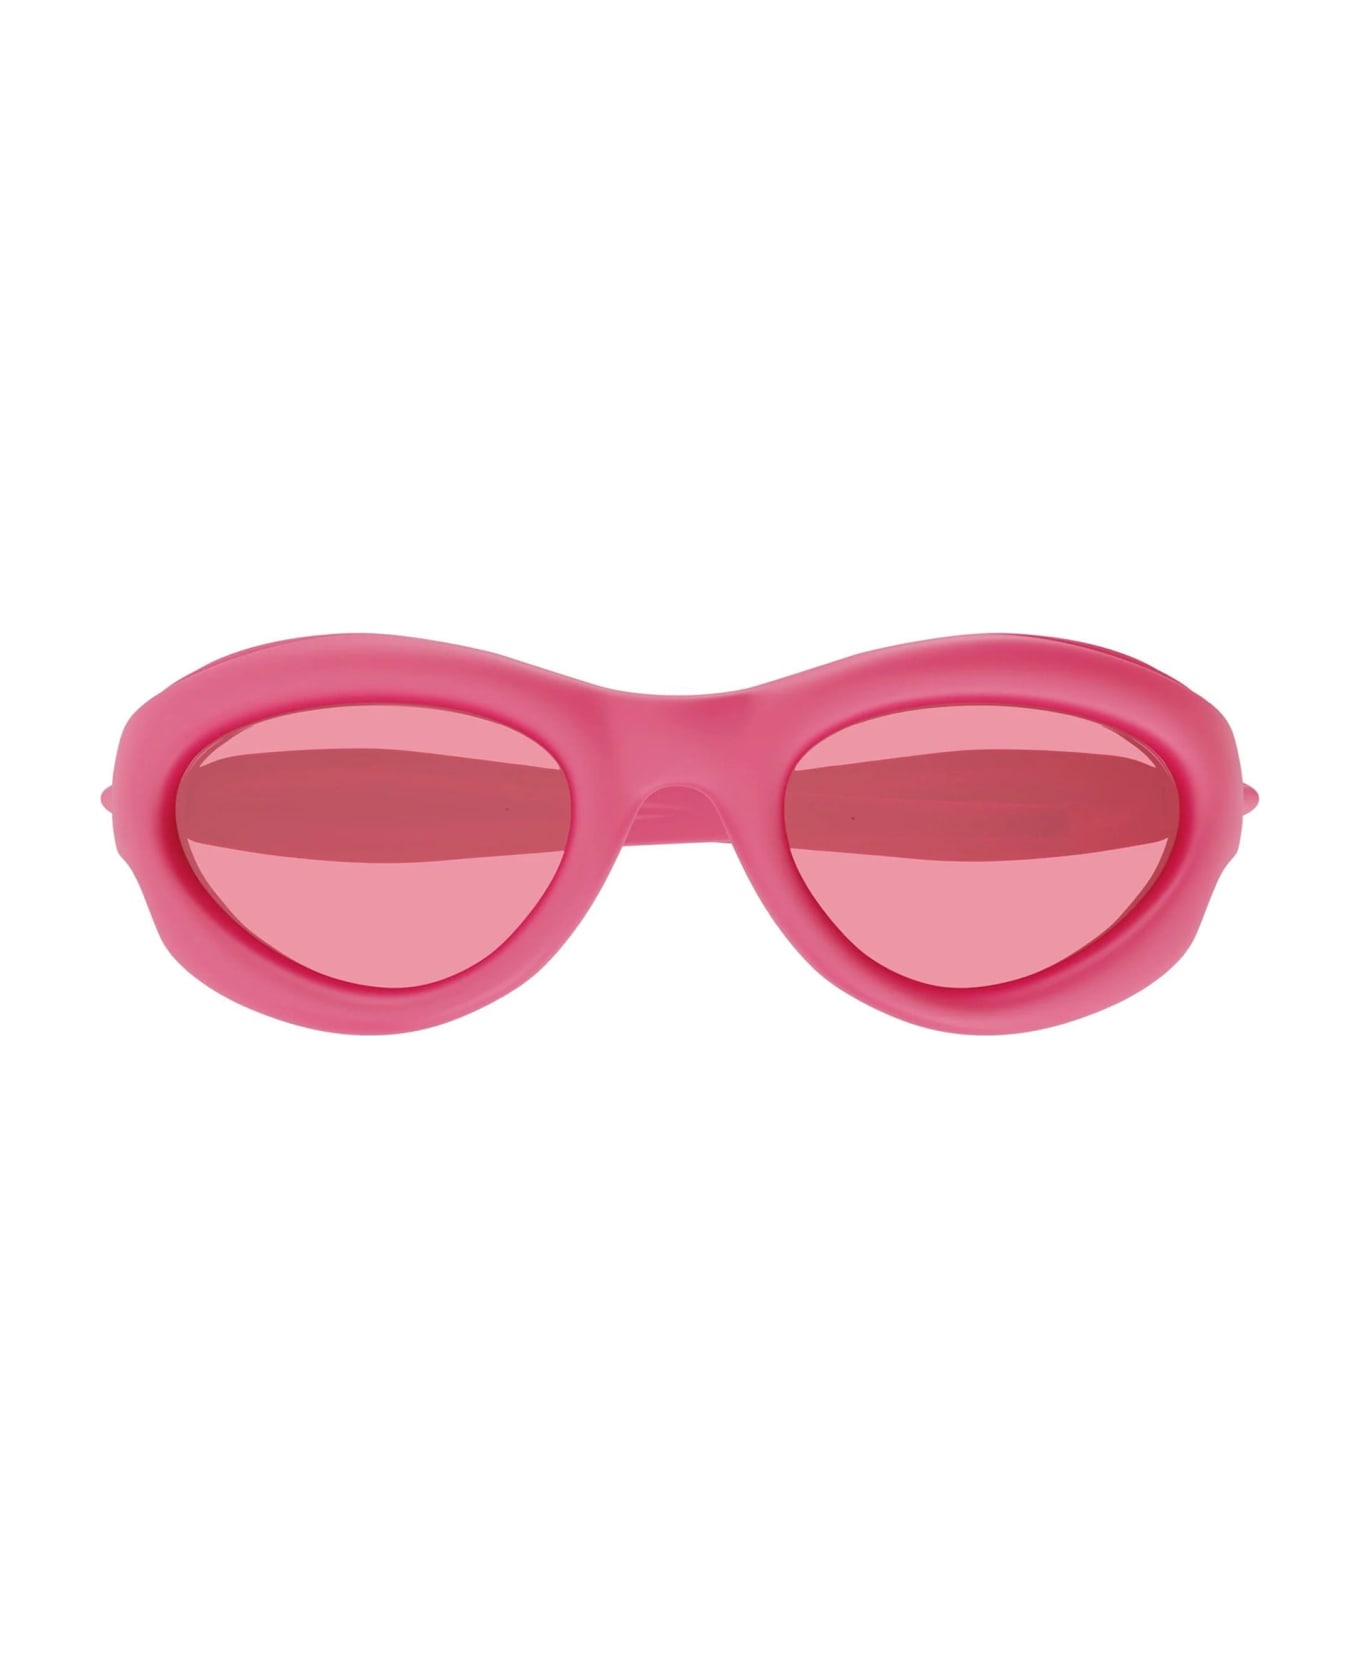 Bottega Veneta Eyewear Bv1162s-001 - Pink Sunglasses